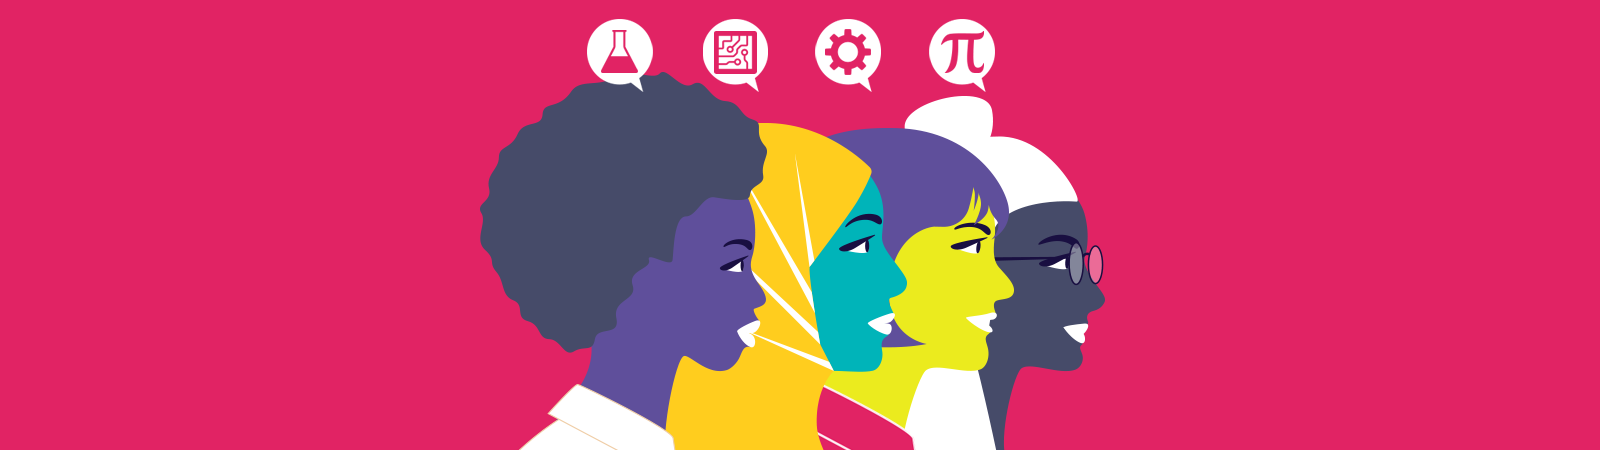 ¿Qué desafíos enfrentan las mujeres para dedicarse a la ciencia y la tecnología?